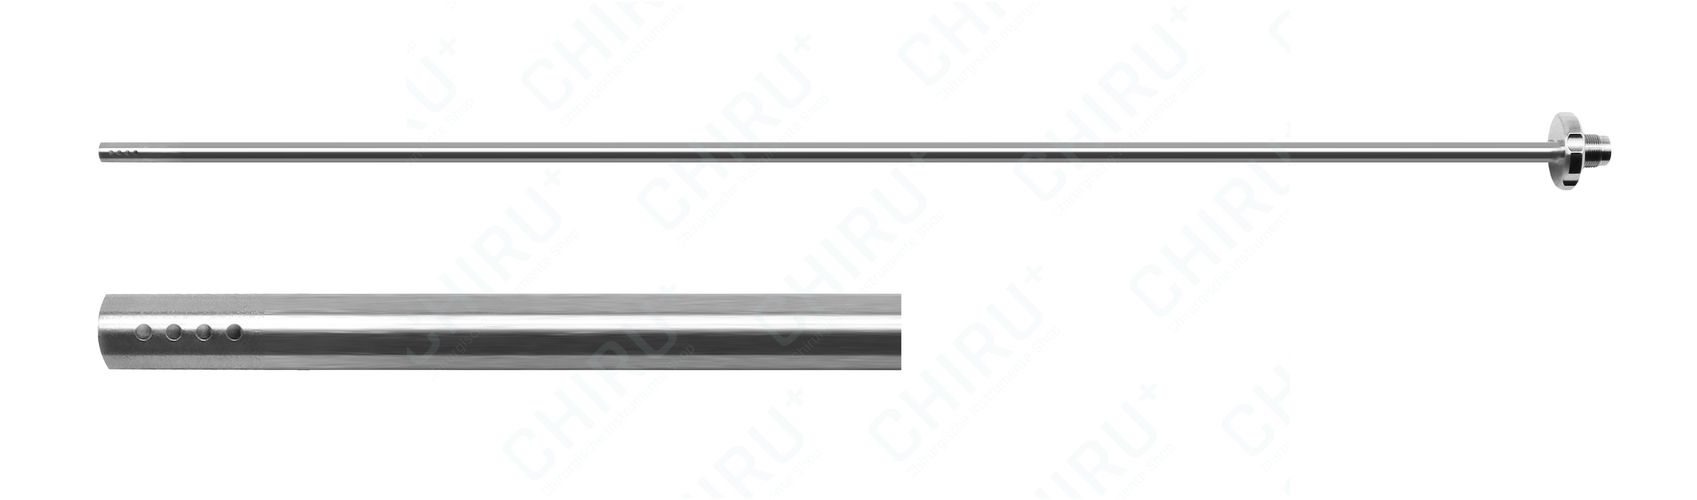 Standard Rohr für 11-1236, 330 mm 